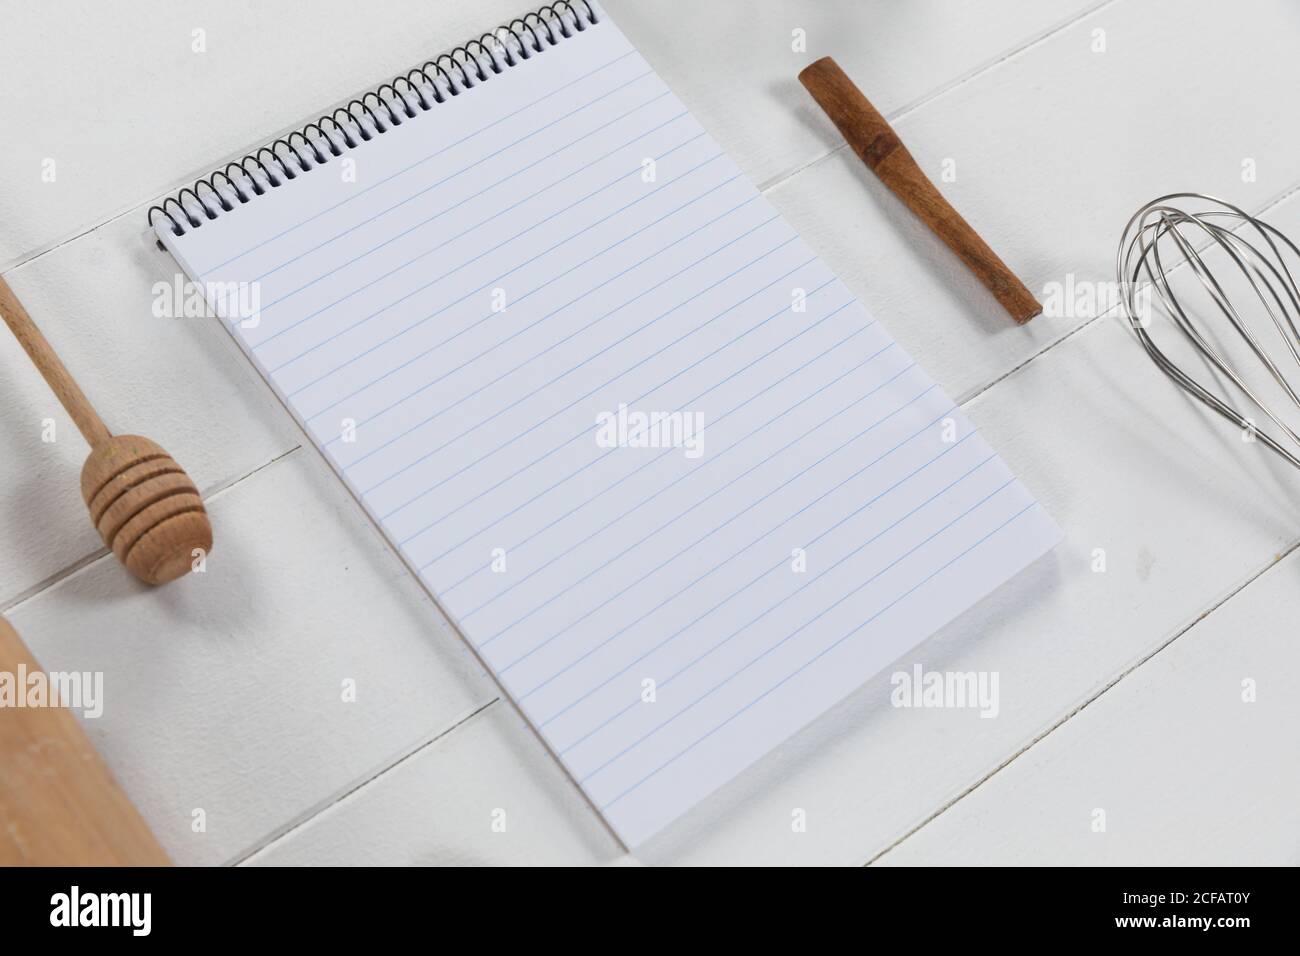 Vista de una composición con un cuaderno con cuchara de madera y susurrar sobre una superficie de madera blanca Foto de stock